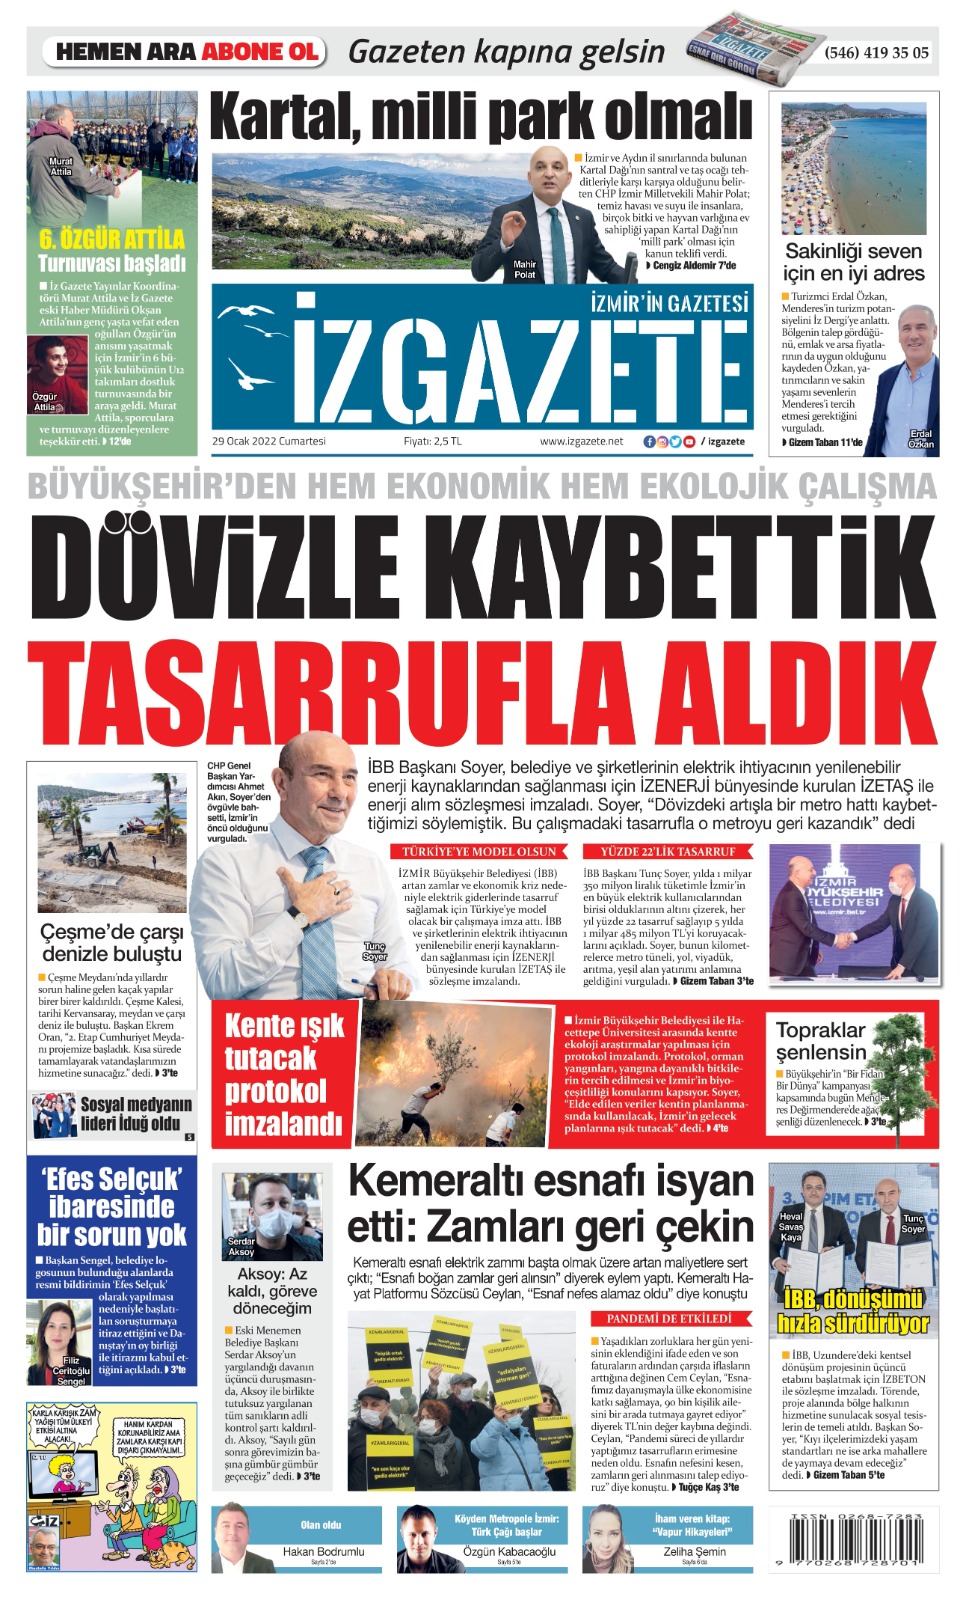 İz Gazete - İzmir'in Gazetesi - 29.01.2022 Manşeti